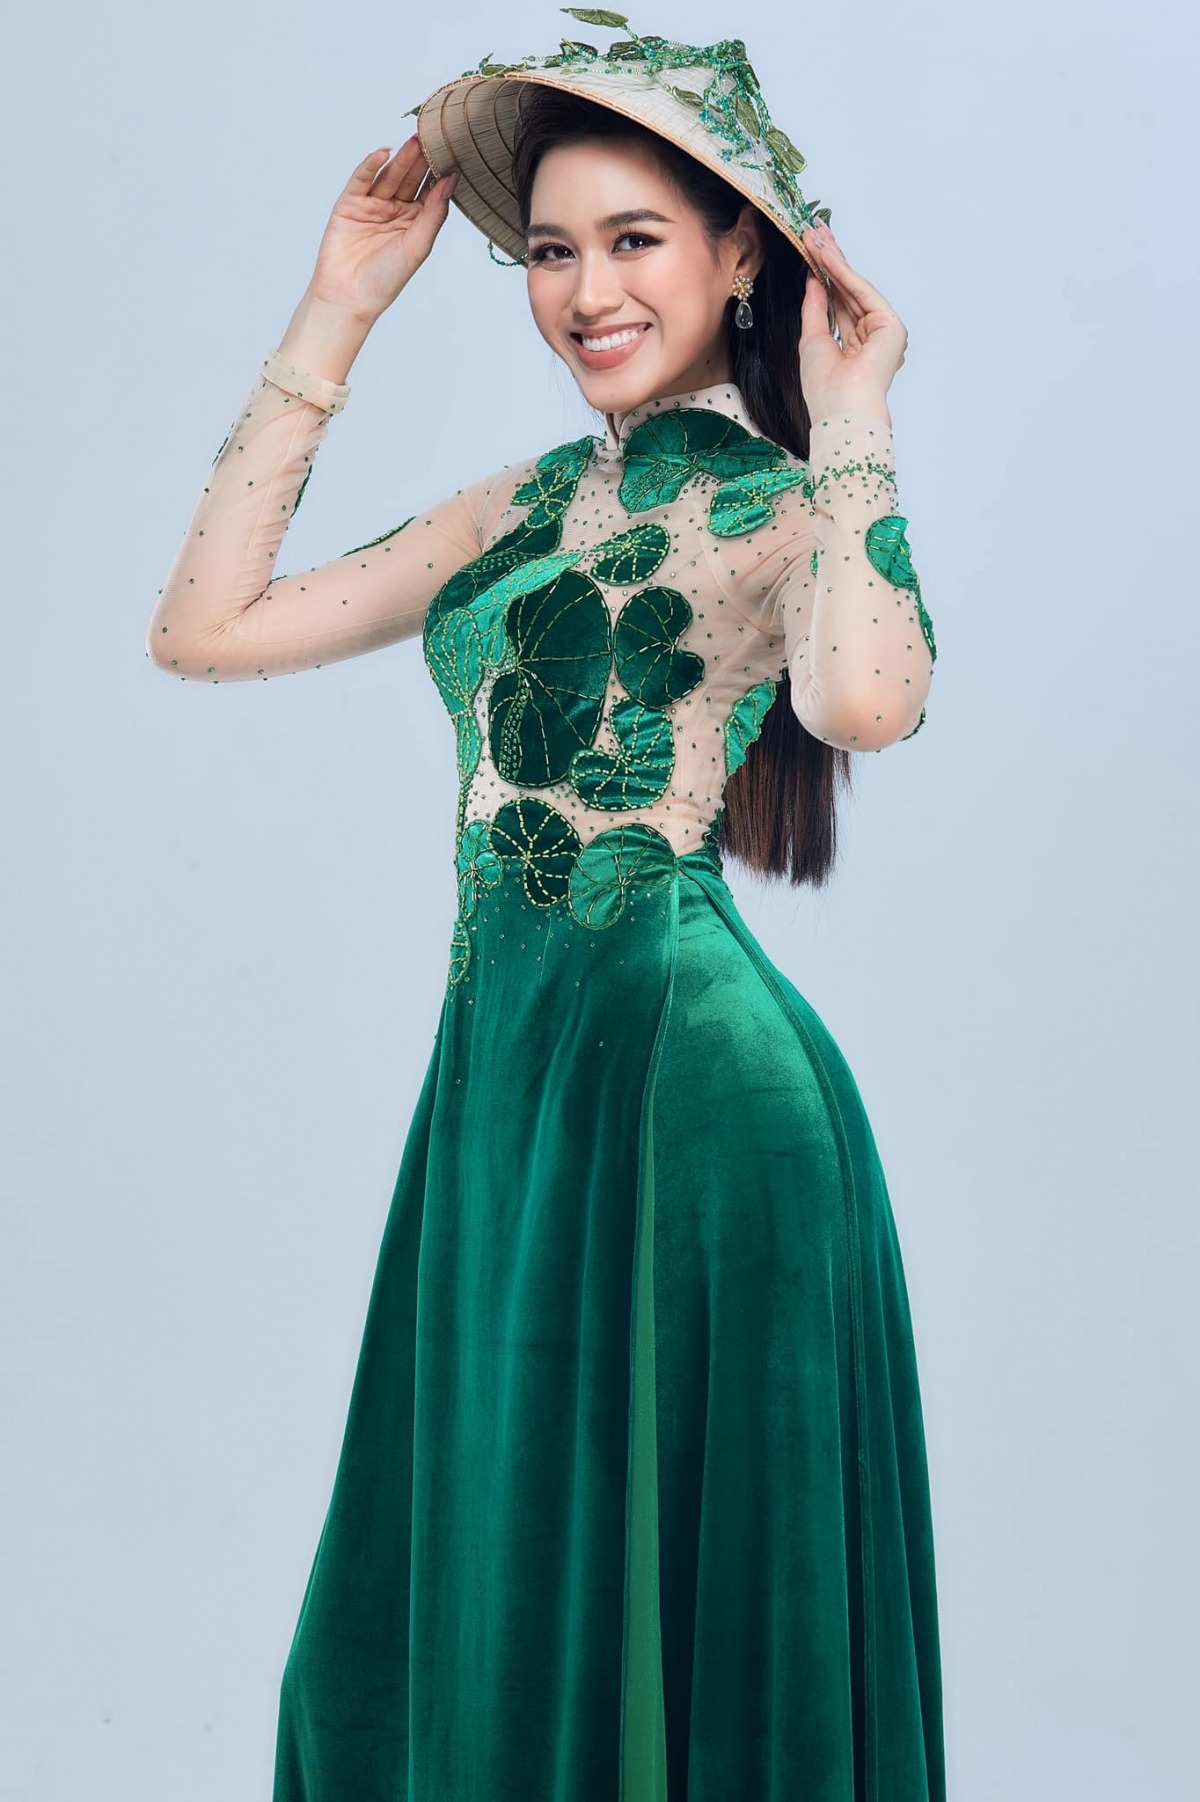 Đỗ Thị Hà bị nhắc nhở vì thói xấu 'kém sang', làm ảnh hưởng không nhỏ đến hình ảnh hoa hậu Việt 1